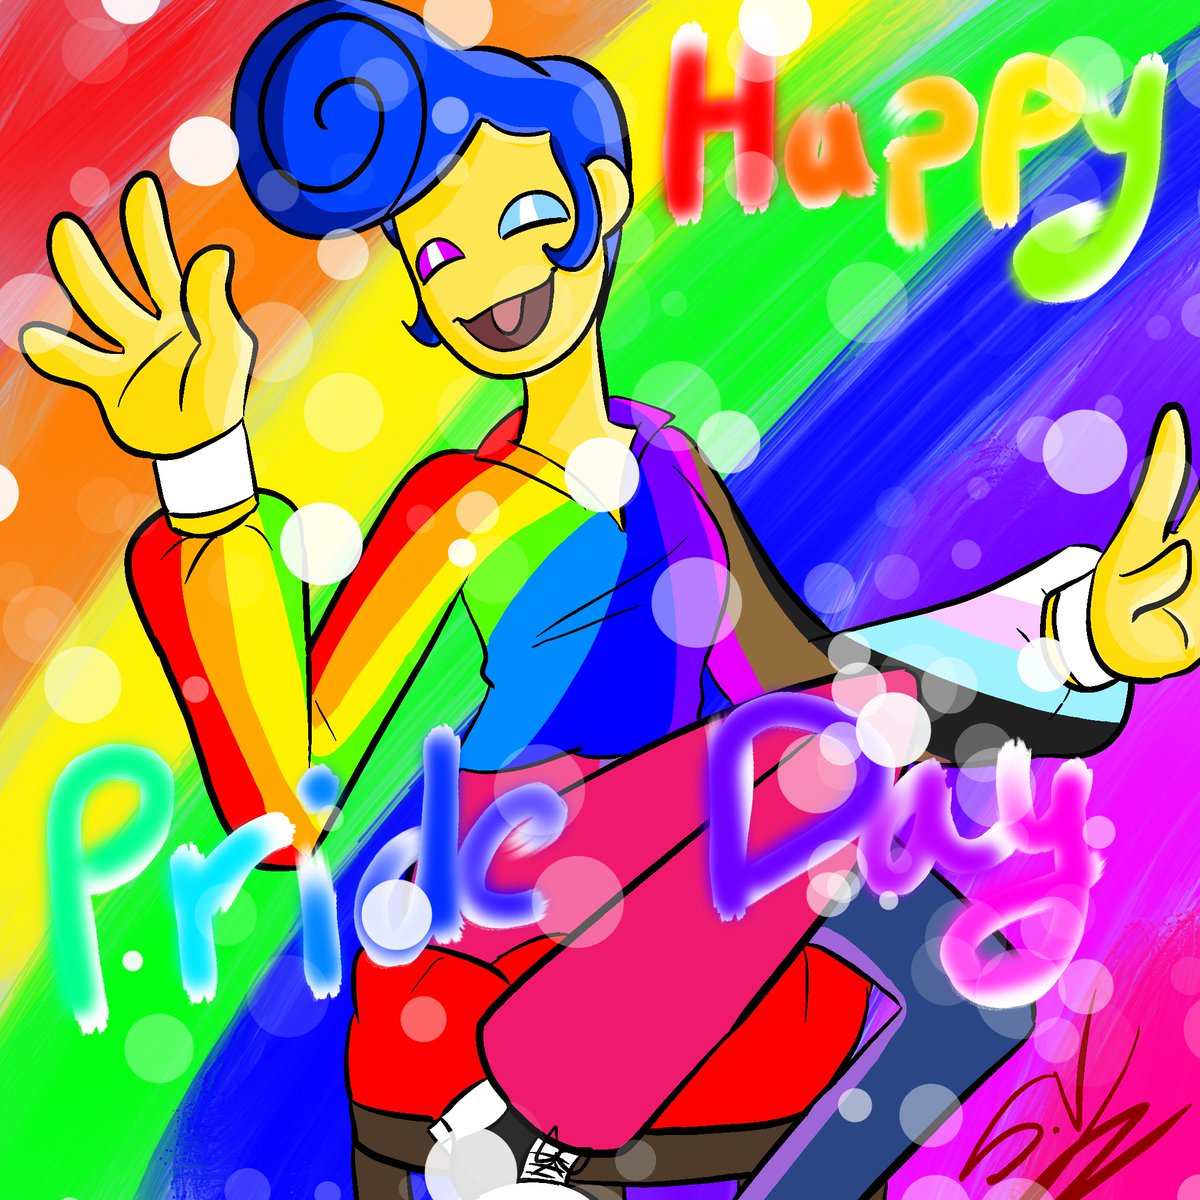 Happy Pride Day! 🏳️‍🌈 #WallyDarlingfanart #WallyDarling #prideday